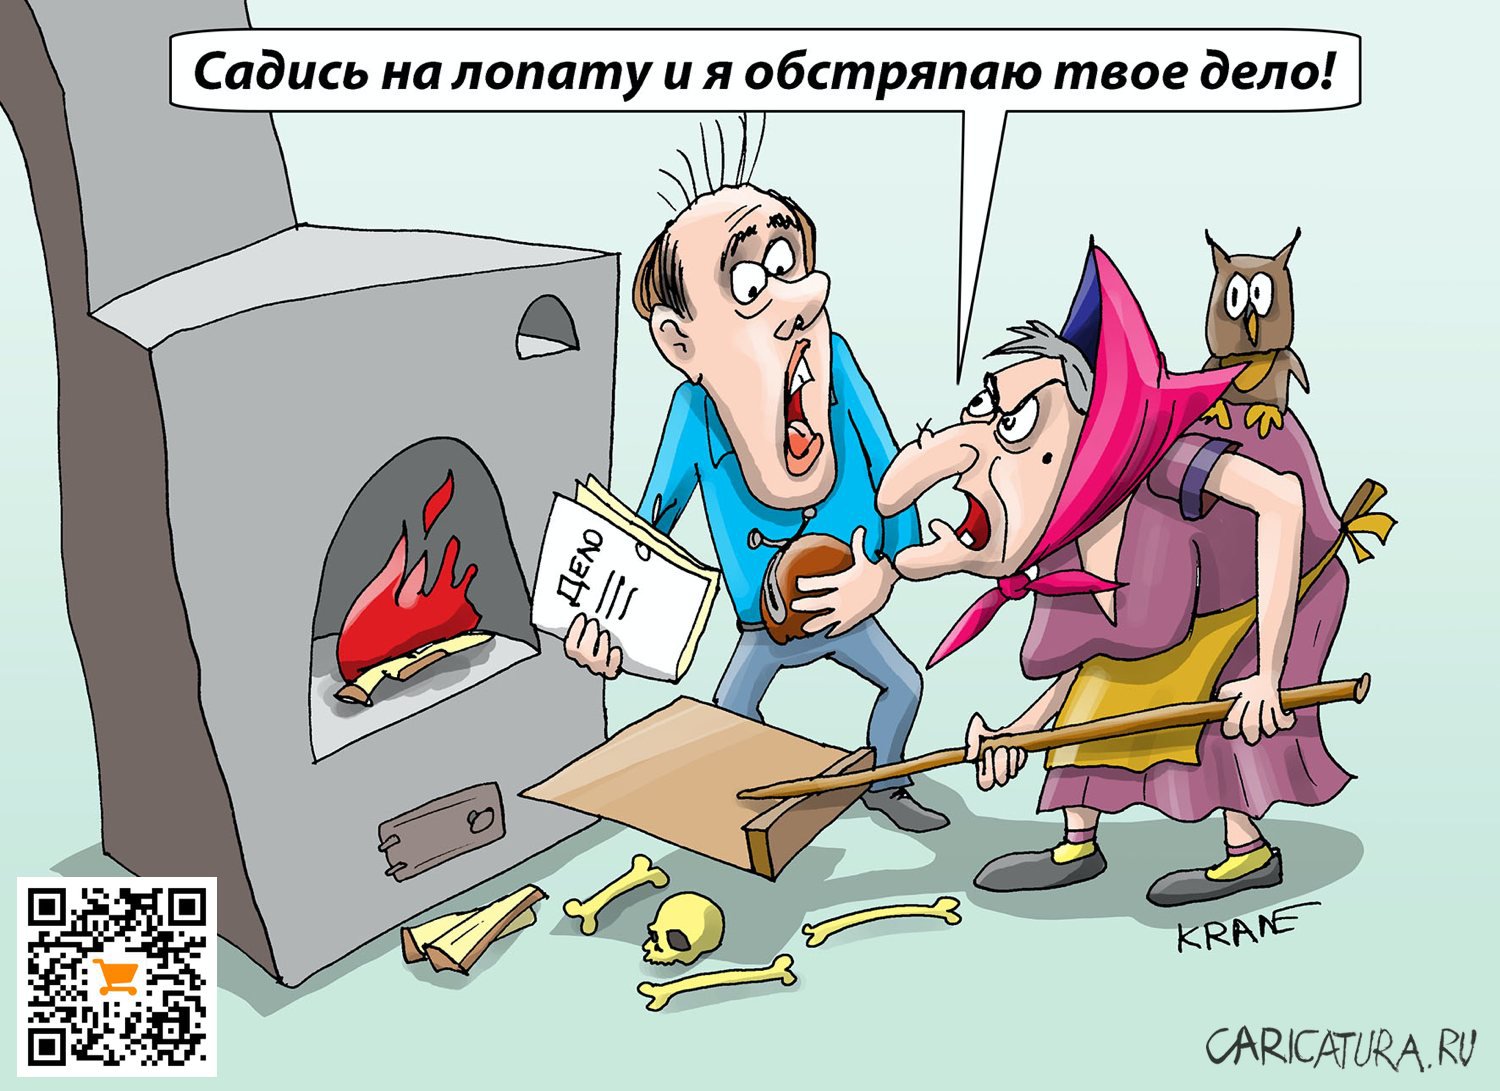 Карикатура "Ах, обмануть меня нетрудно", Евгений Кран